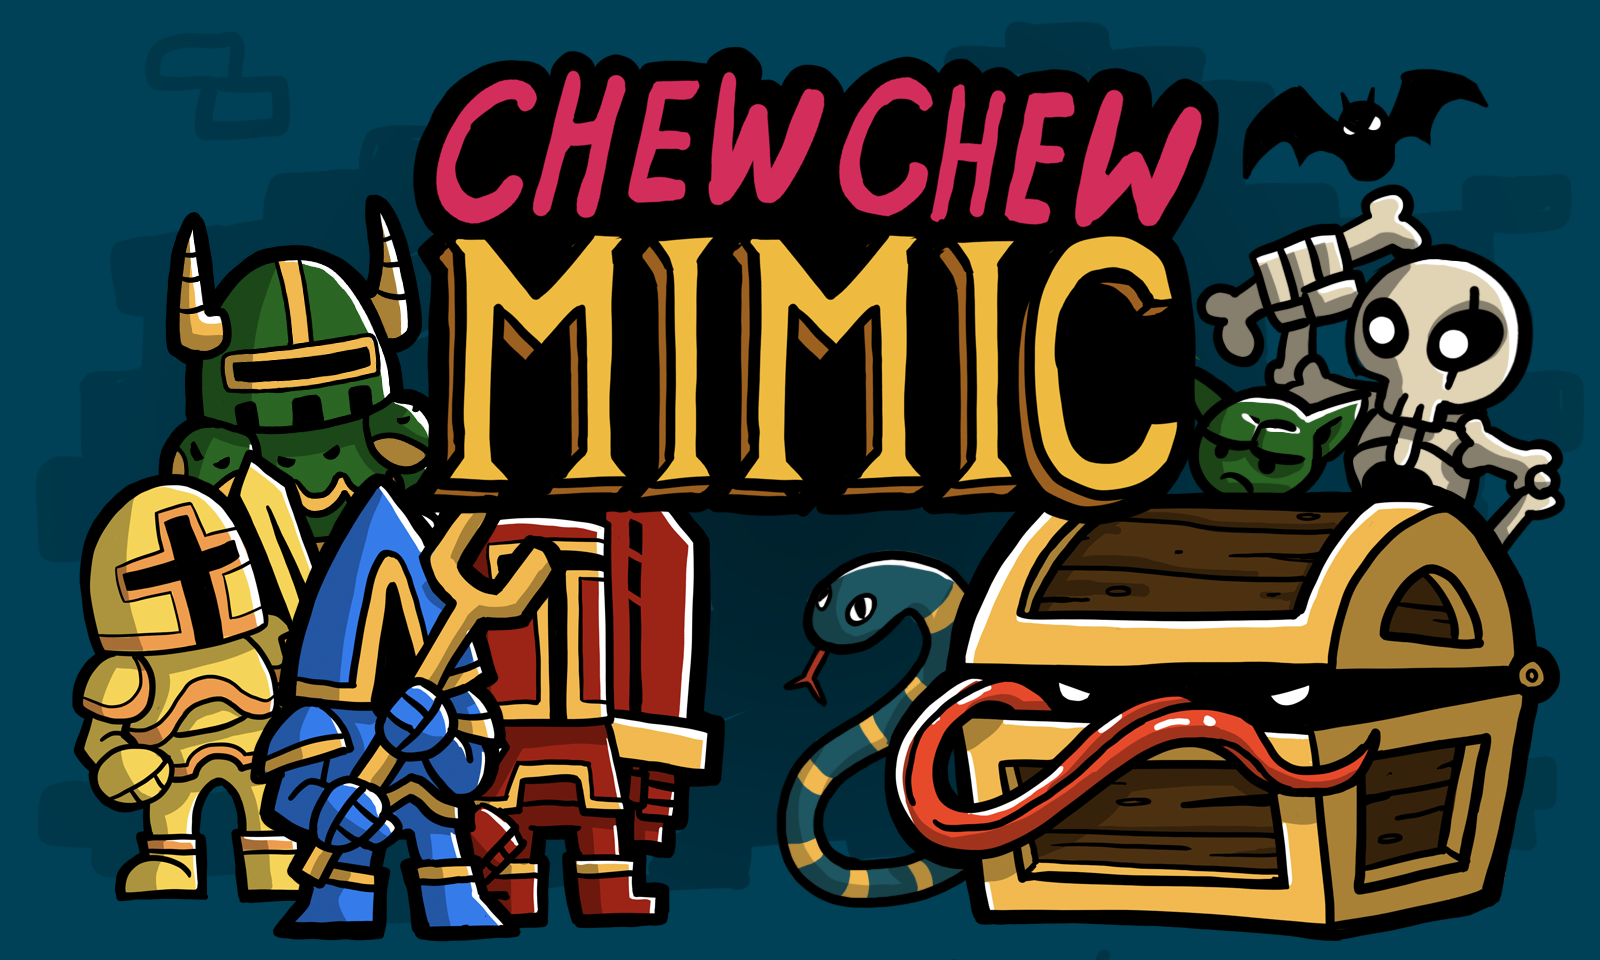 Chew Chew Mimic